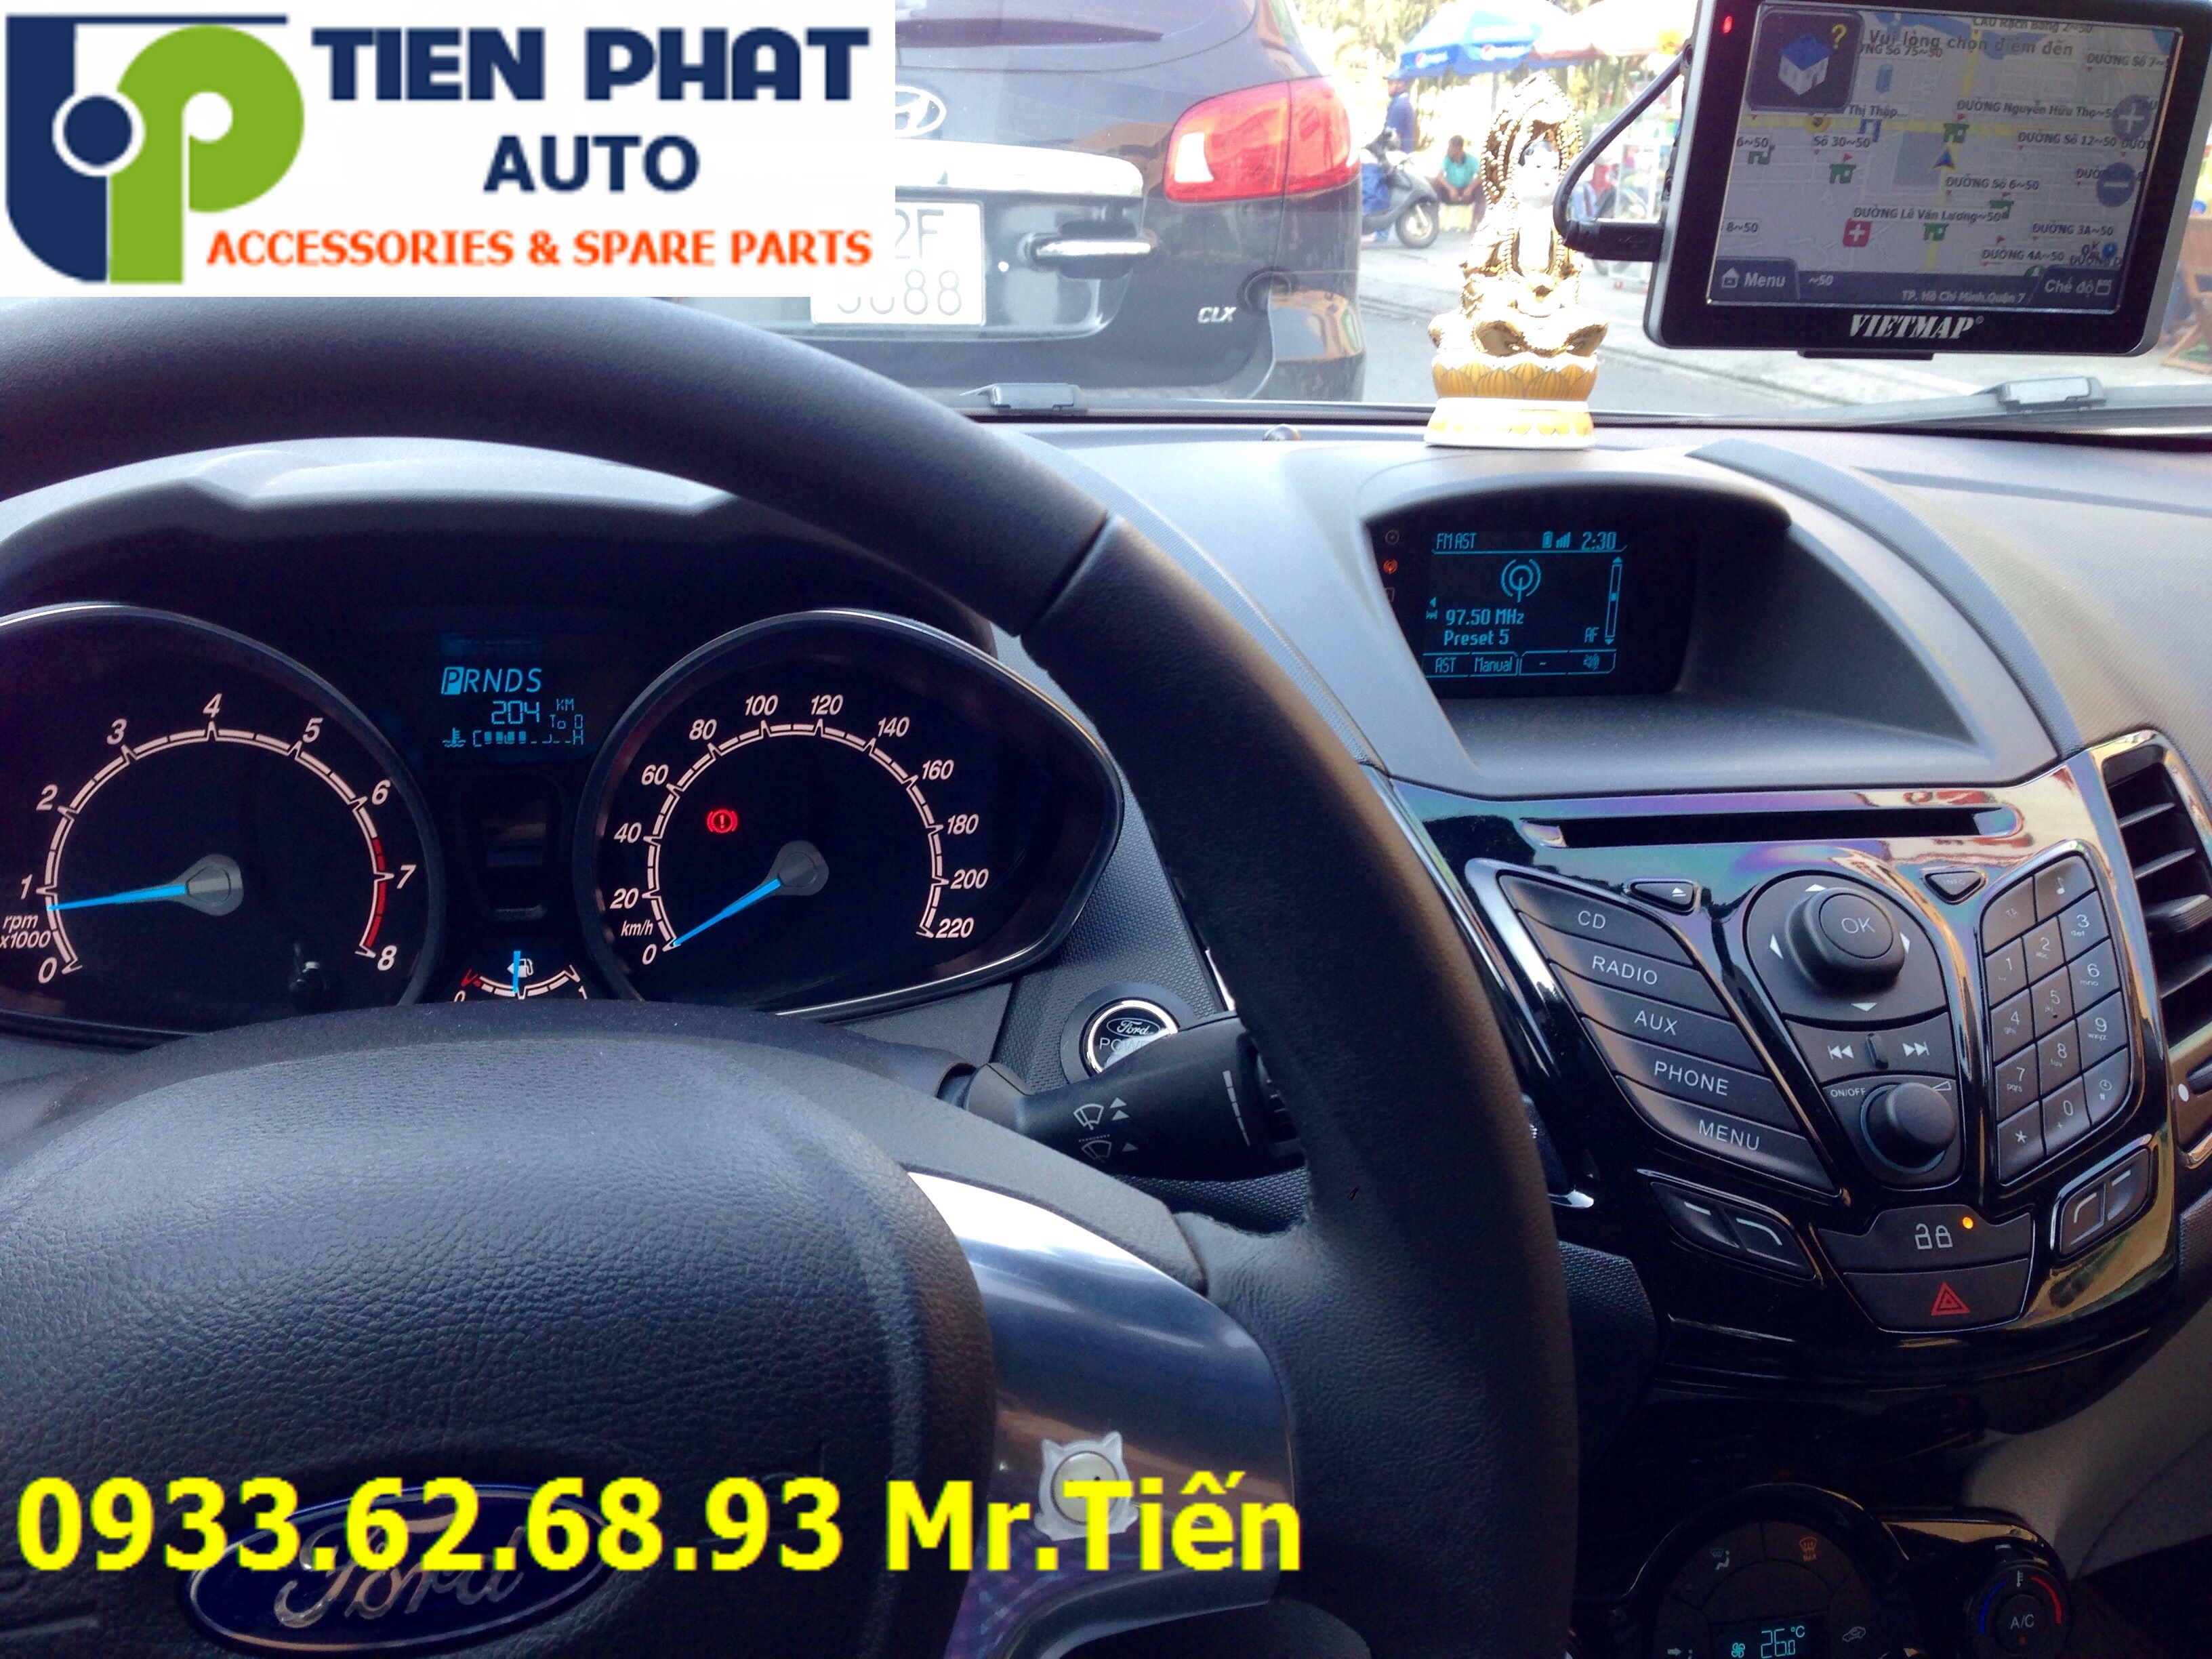 Lắp Thiết Bị Dẫn Đường (GPS) VietMap S1 Cho Xe Ô Tô Tại Quận 6 Uy Tín Nhanh